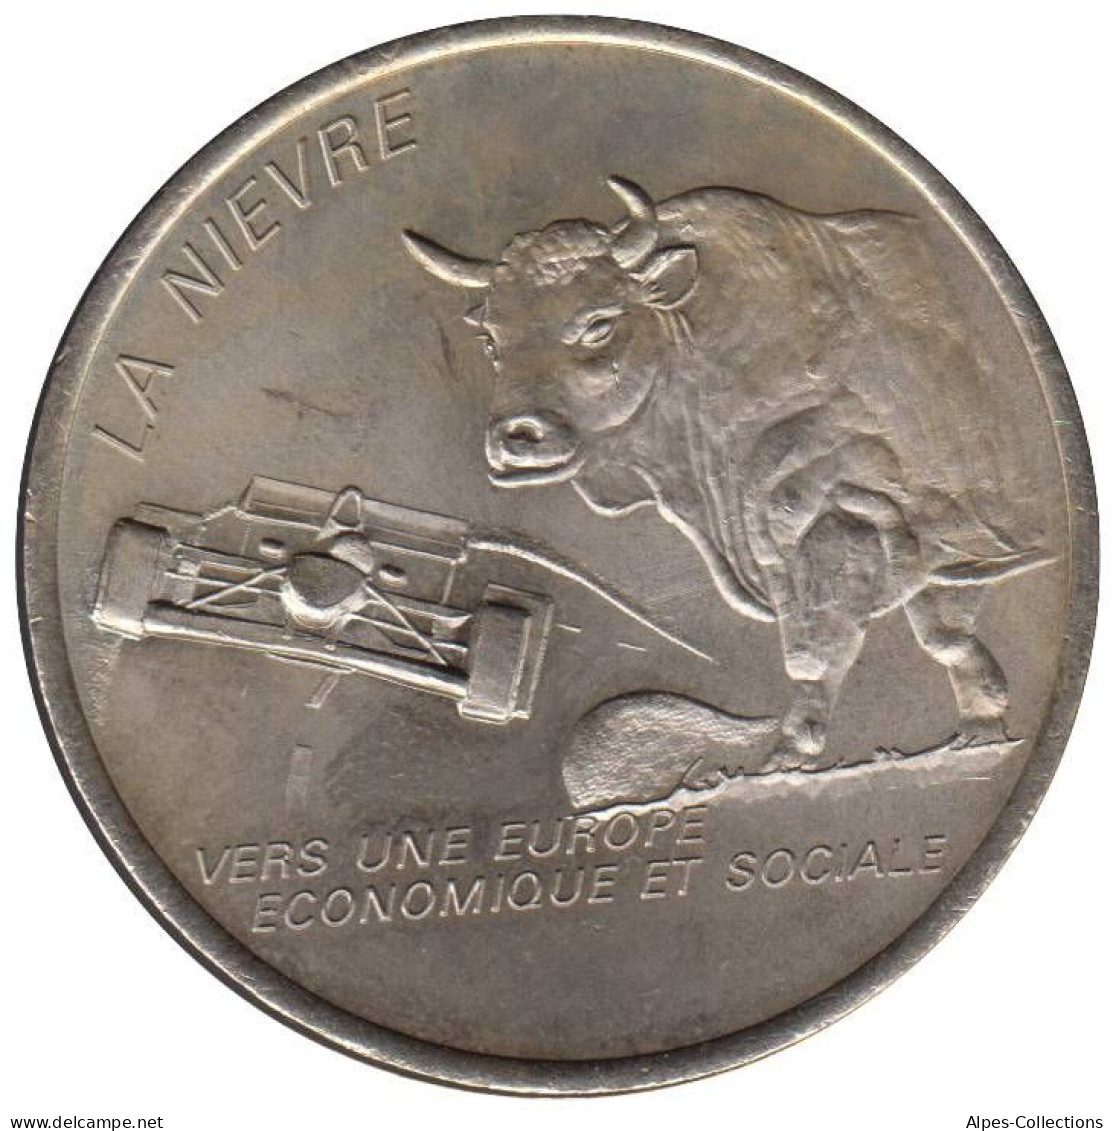 NIEVRE - EU0020.2 - 2 EURO DES VILLES - Réf: T342 - 1997 - Euros Of The Cities